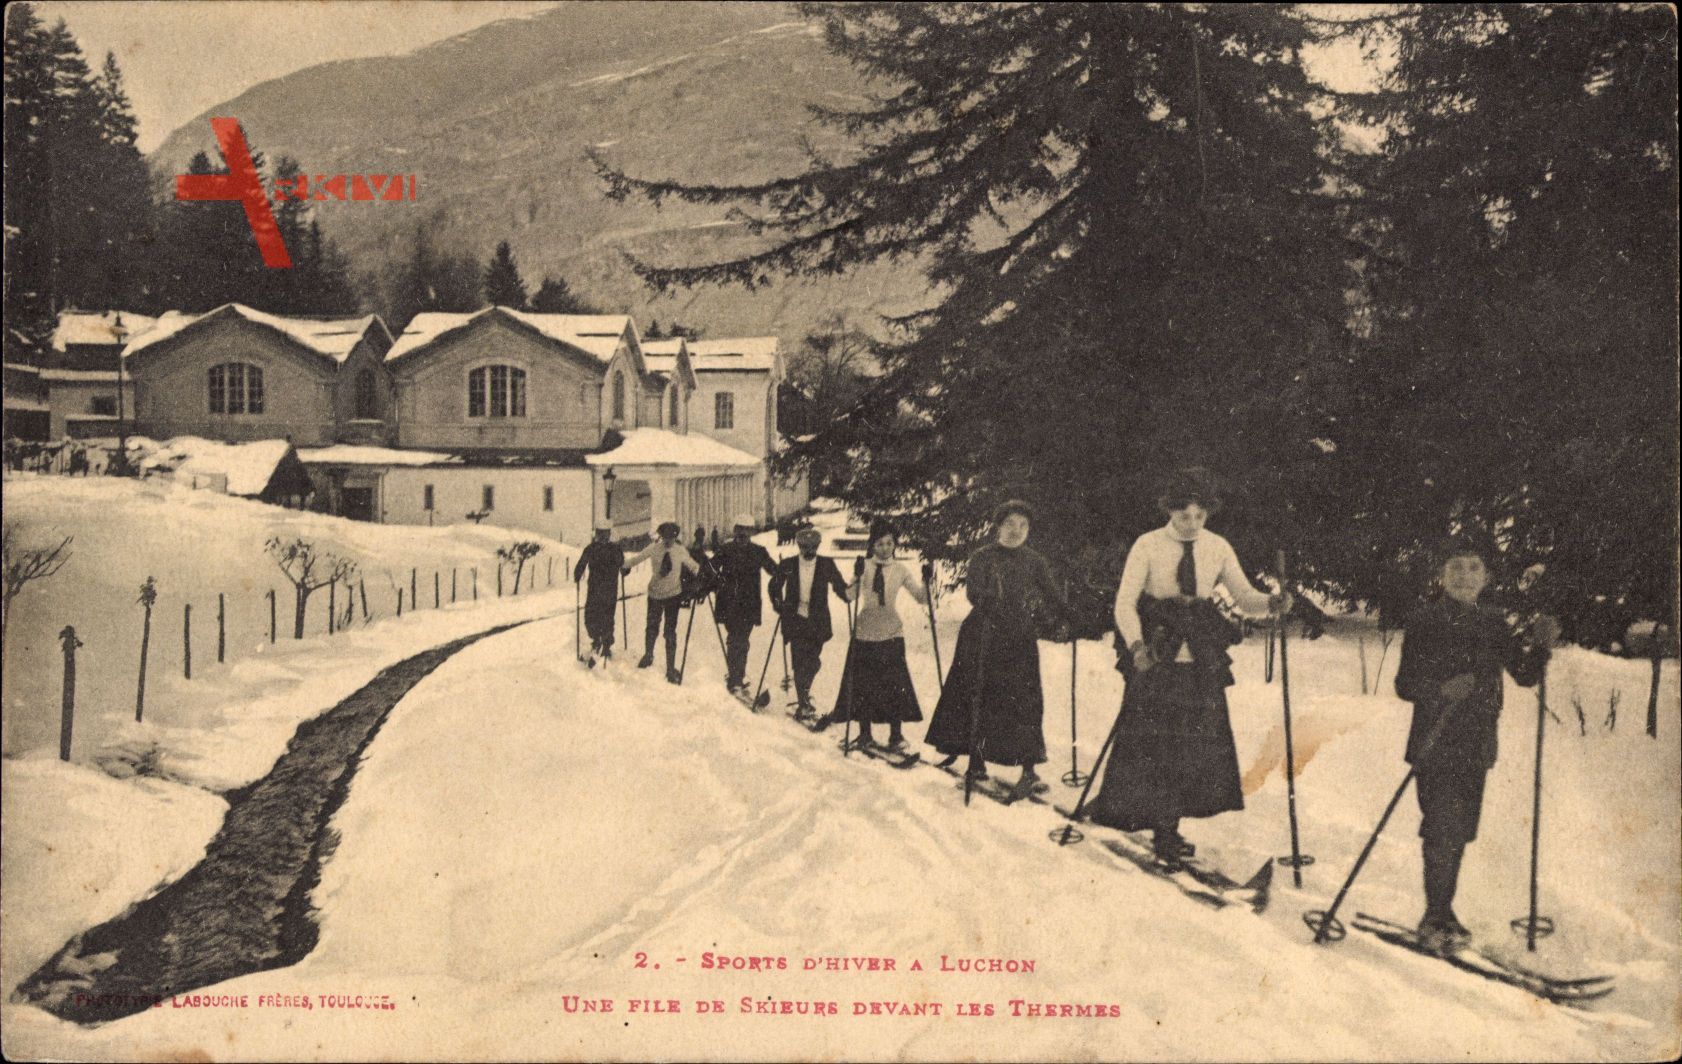 Luchon Haute Garonne, Sports dHiver, File de Skieurs, Thermes